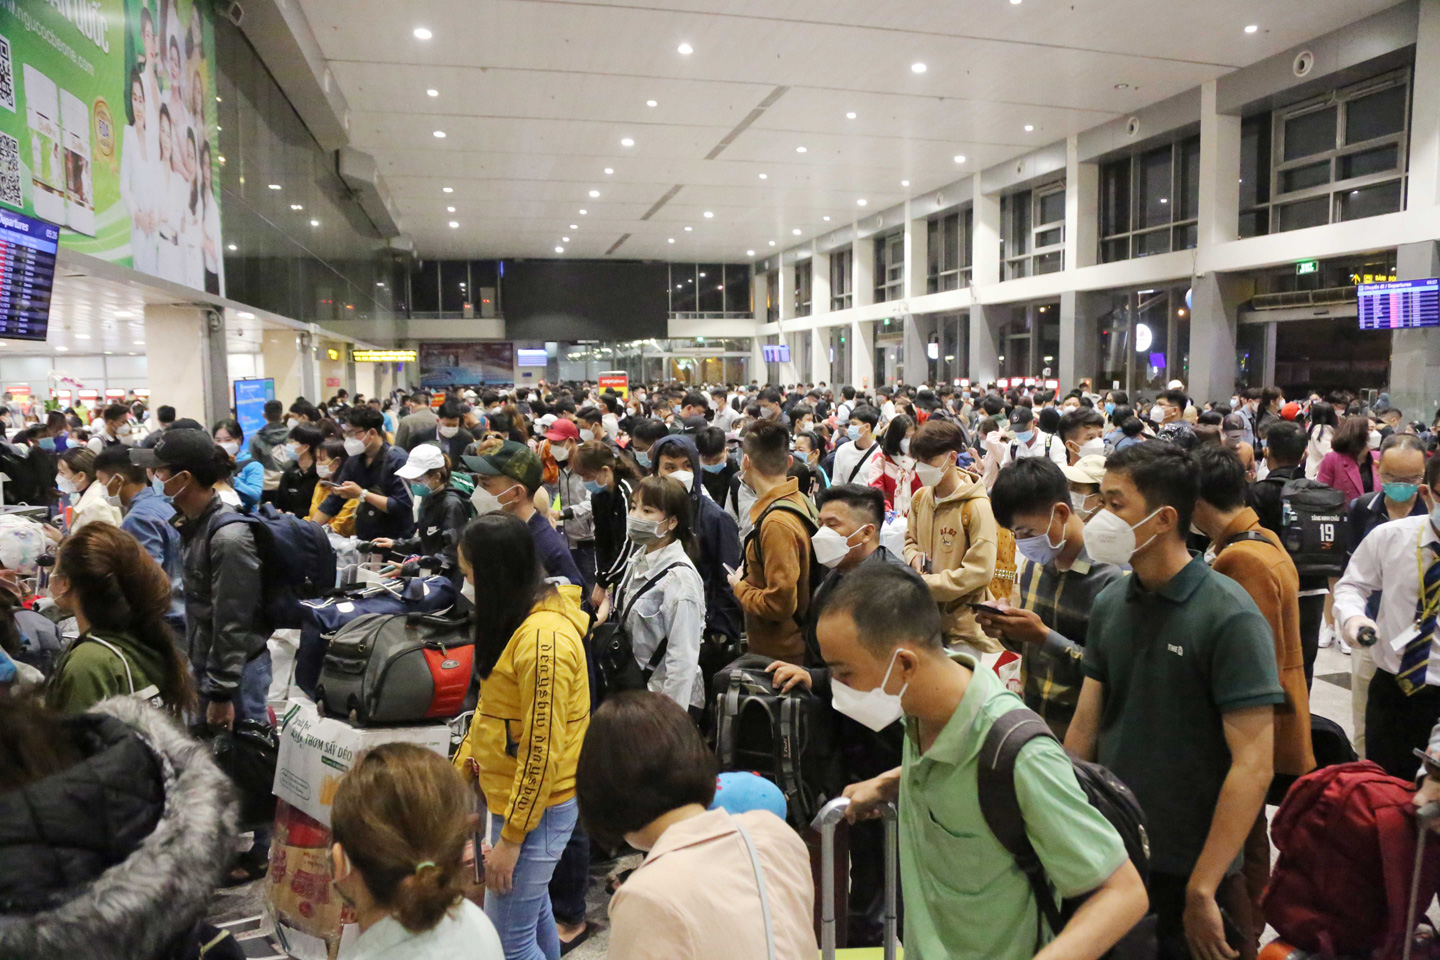 Ảnh: Sân bay Tân Sơn Nhất nghẹt người, khách nằm dài giữa nhà ga cả đêm chờ chuyến bay - 1